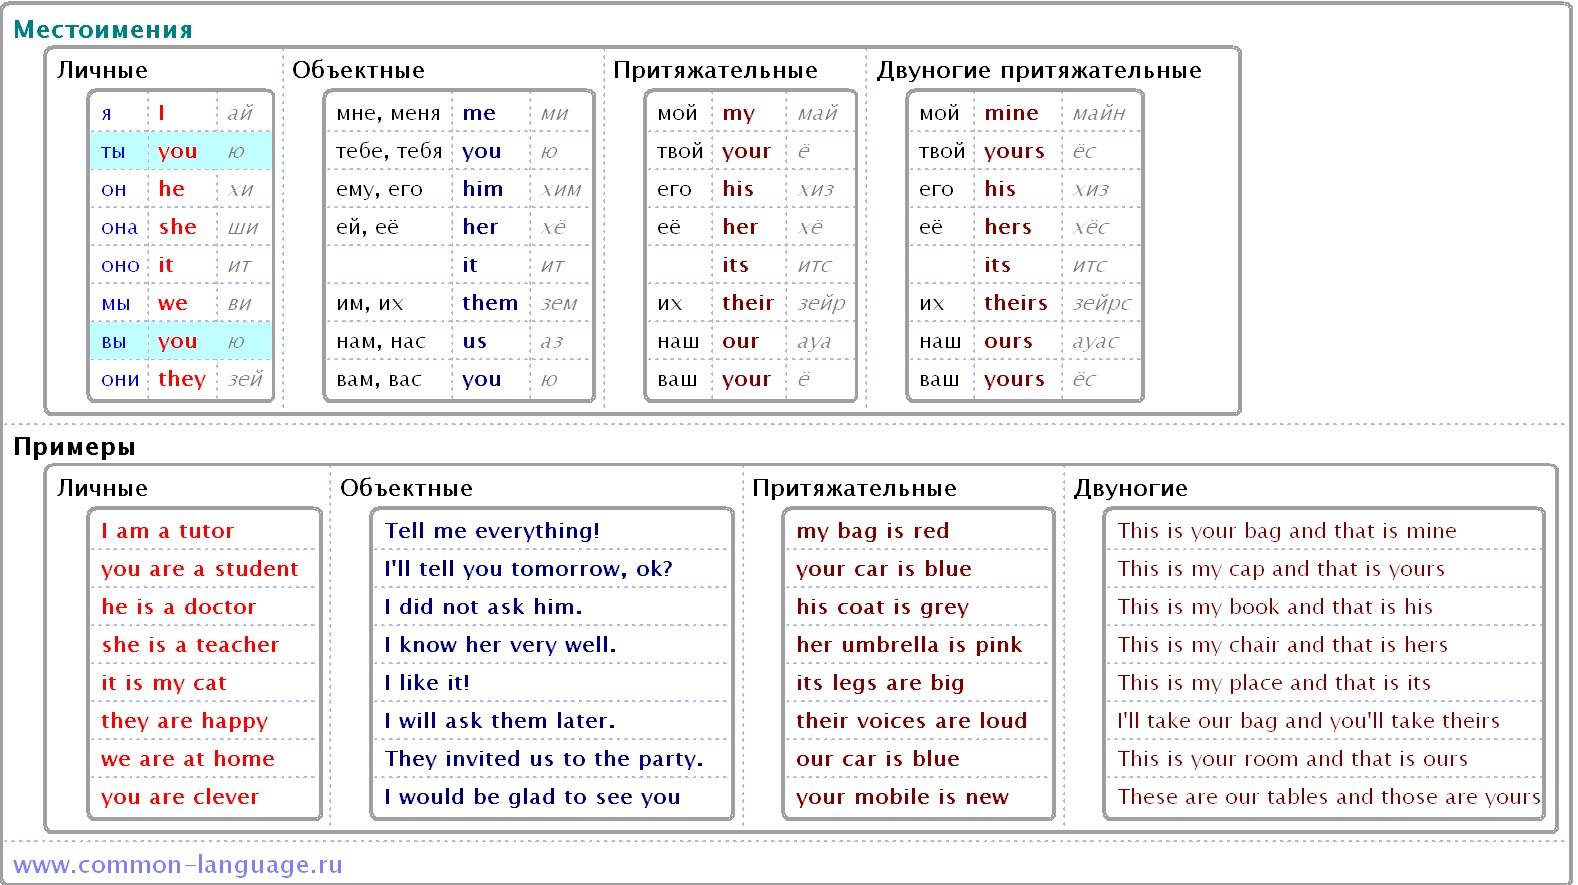 Местоимения английского языка: таблицы и примеры с переводом